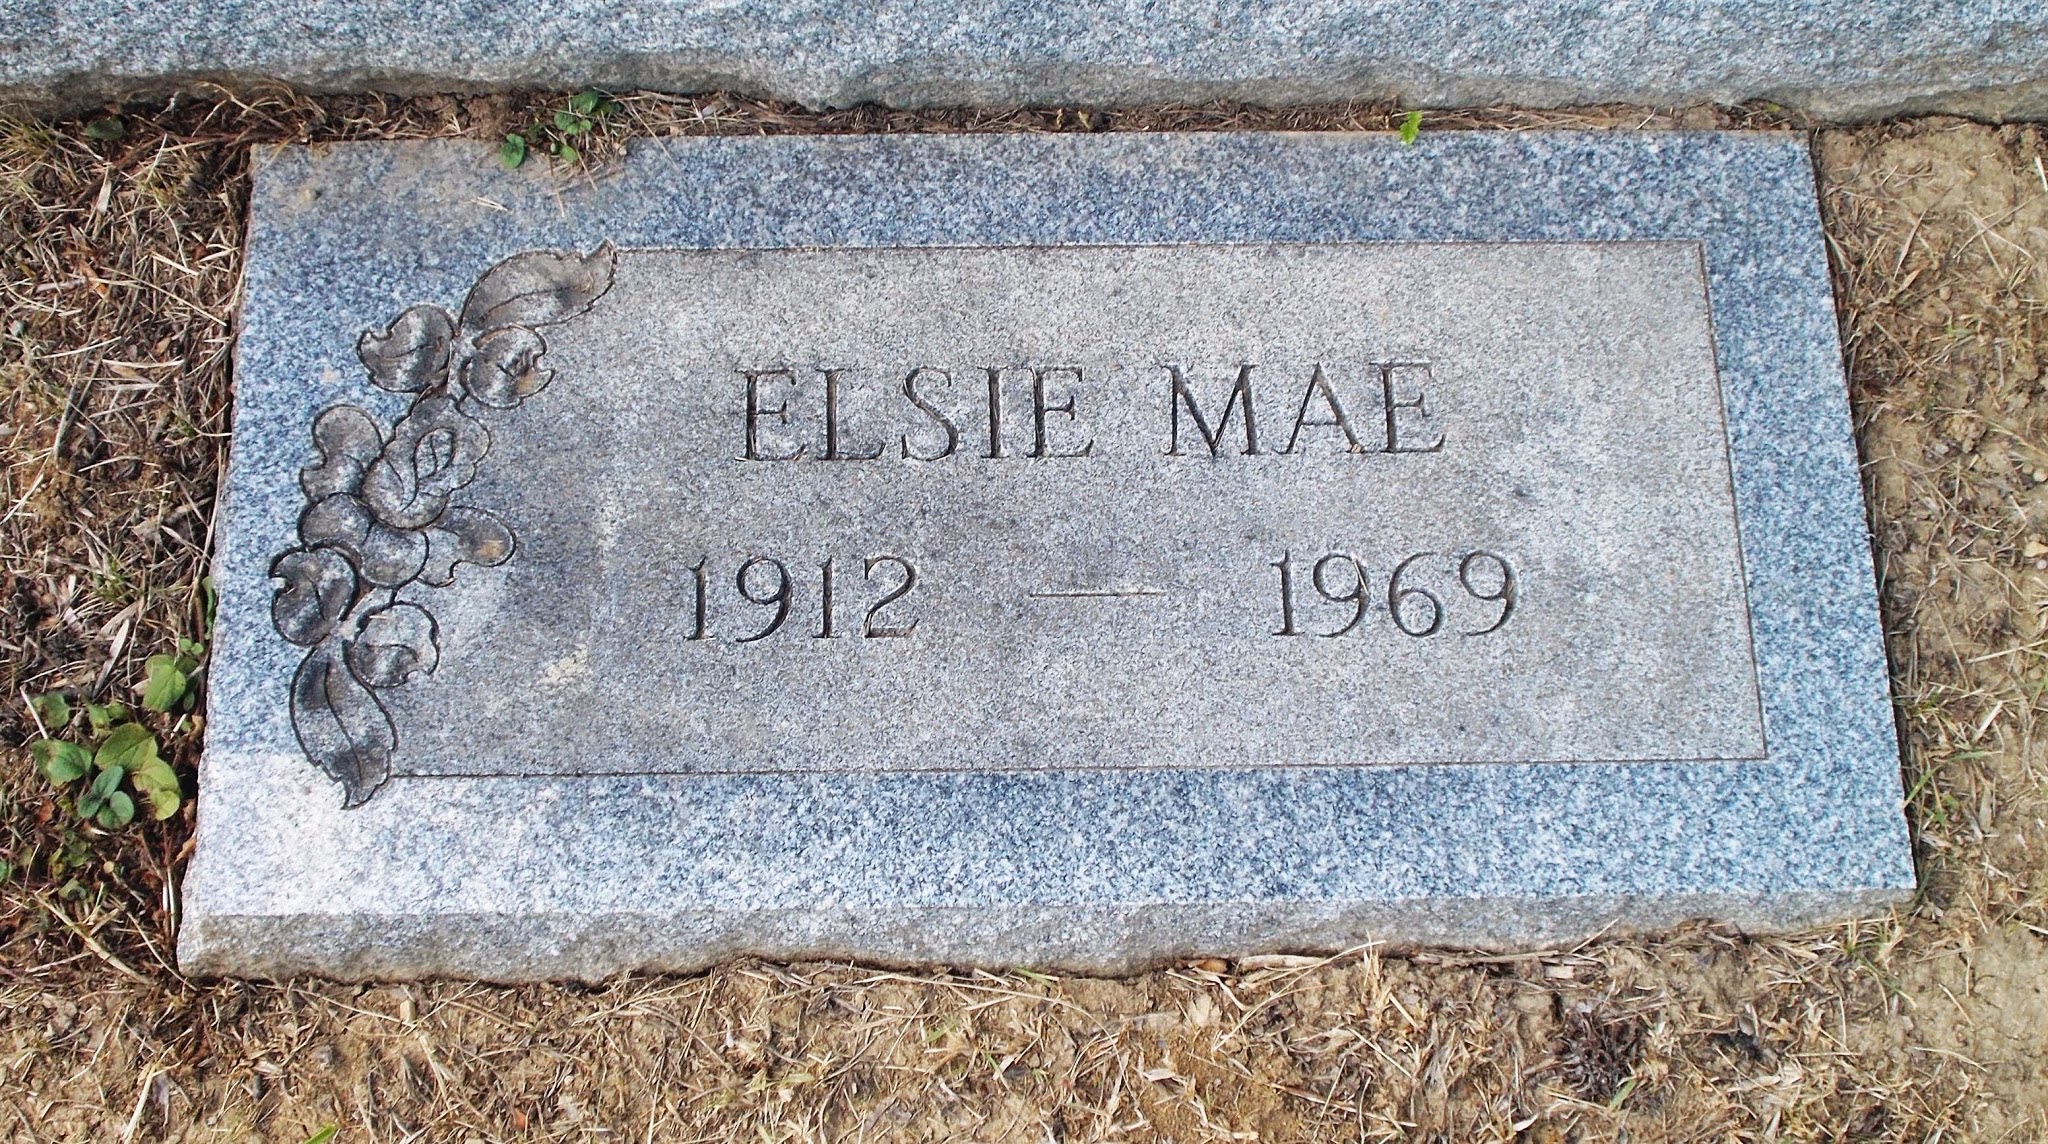 Elsie Mae LeMasters